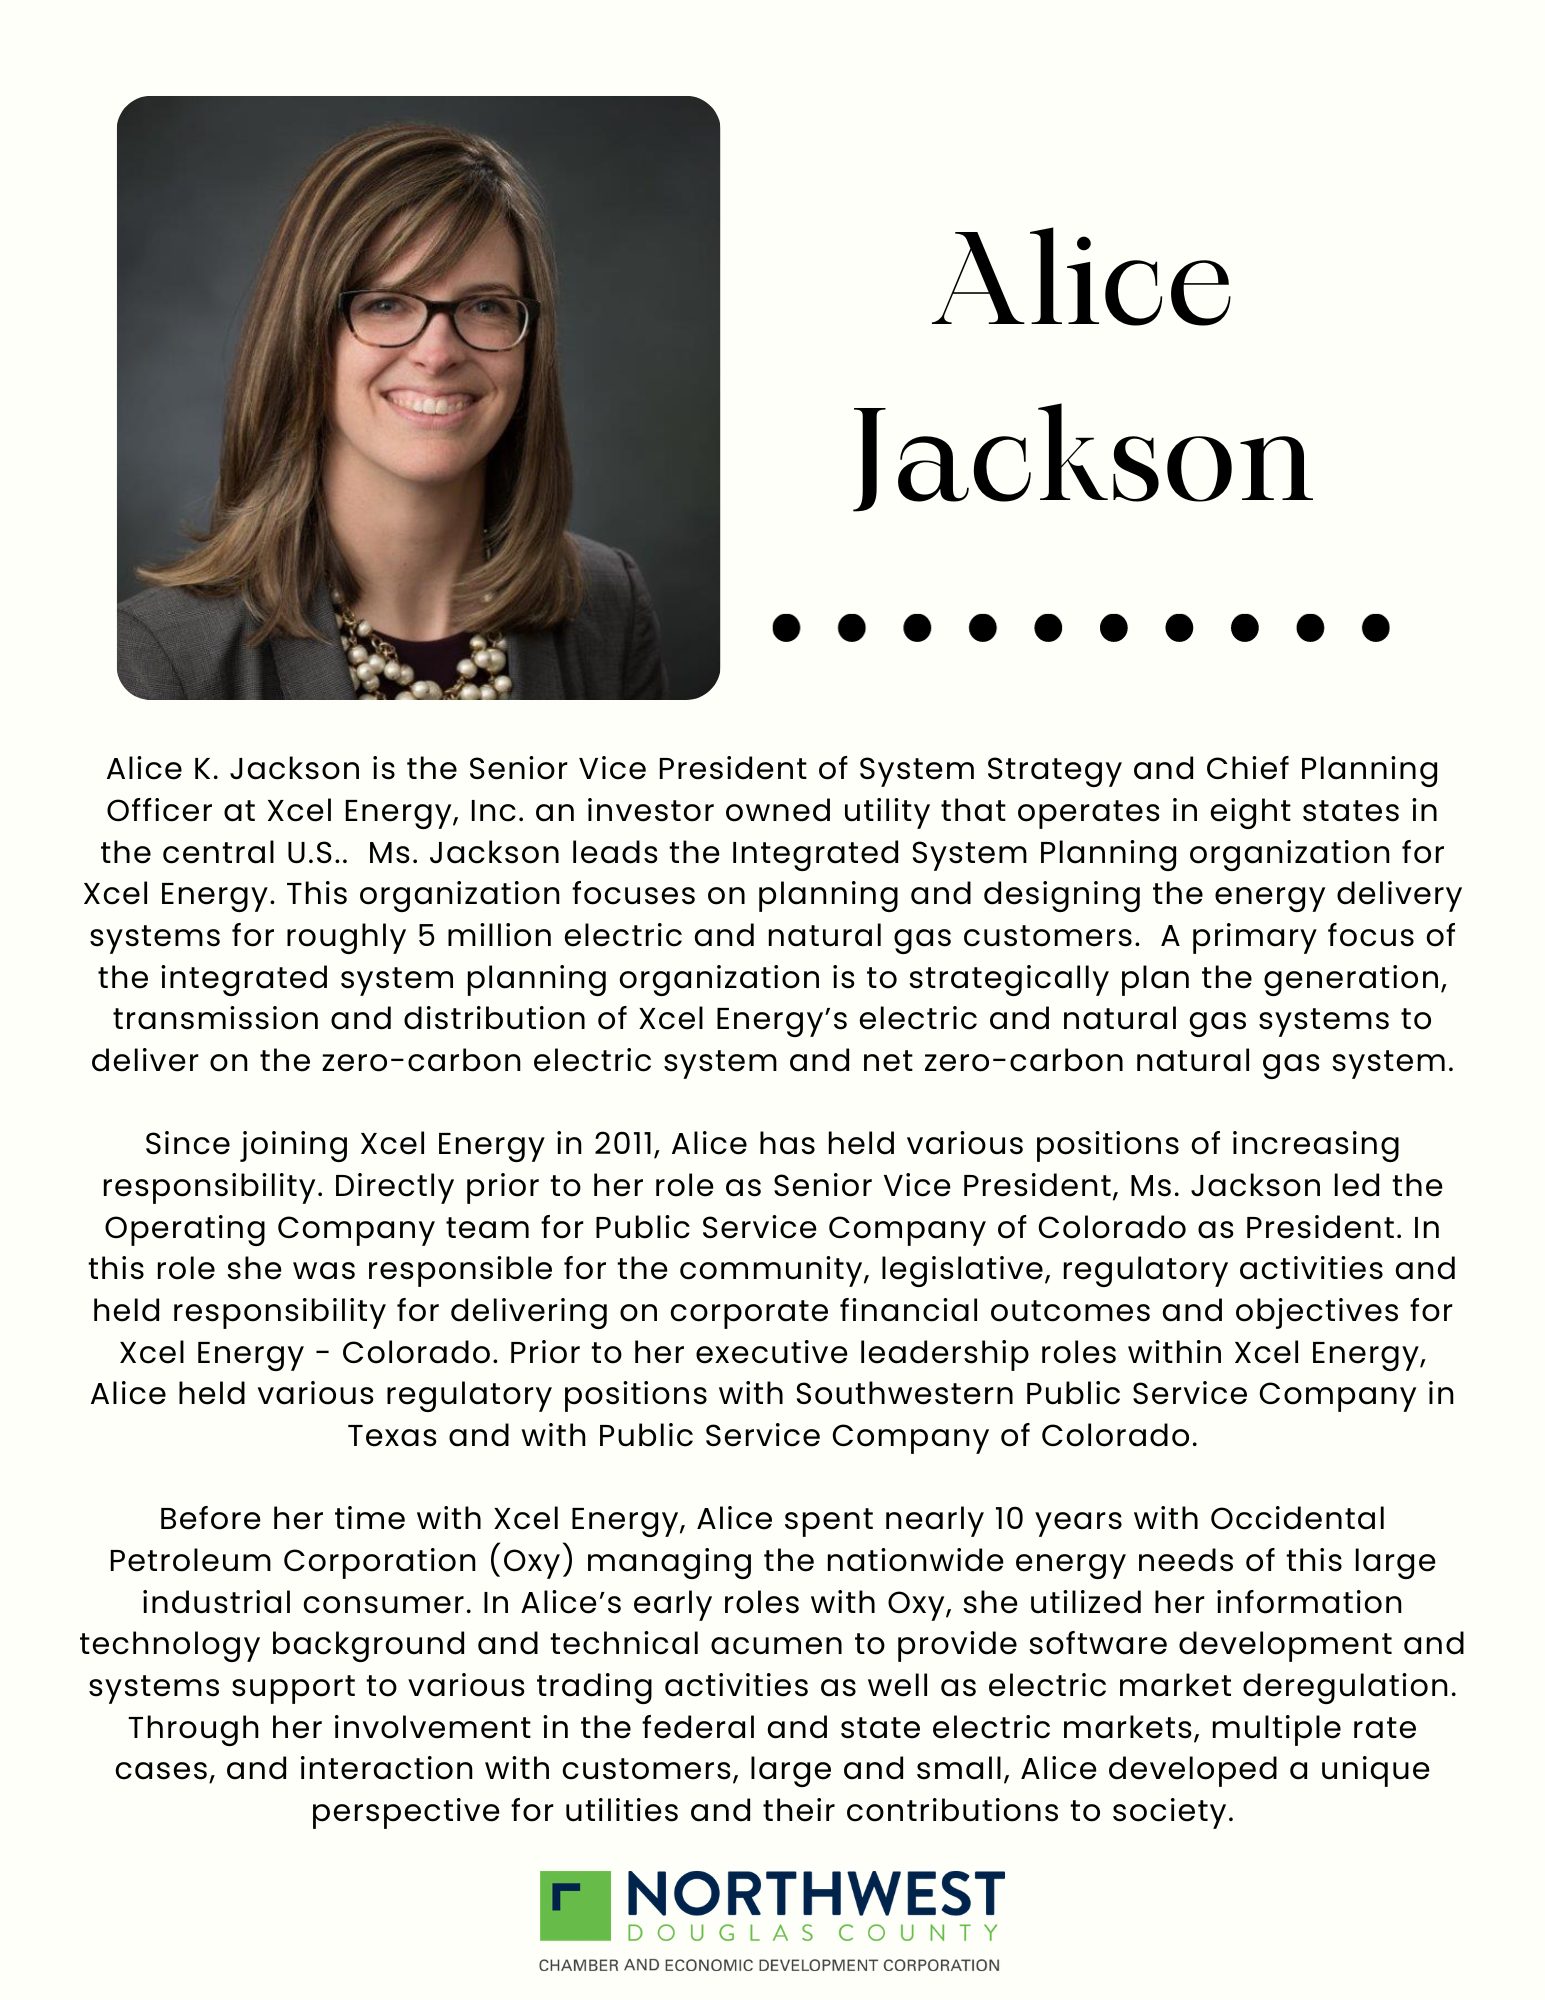 Alice Jackson Honoree Intro